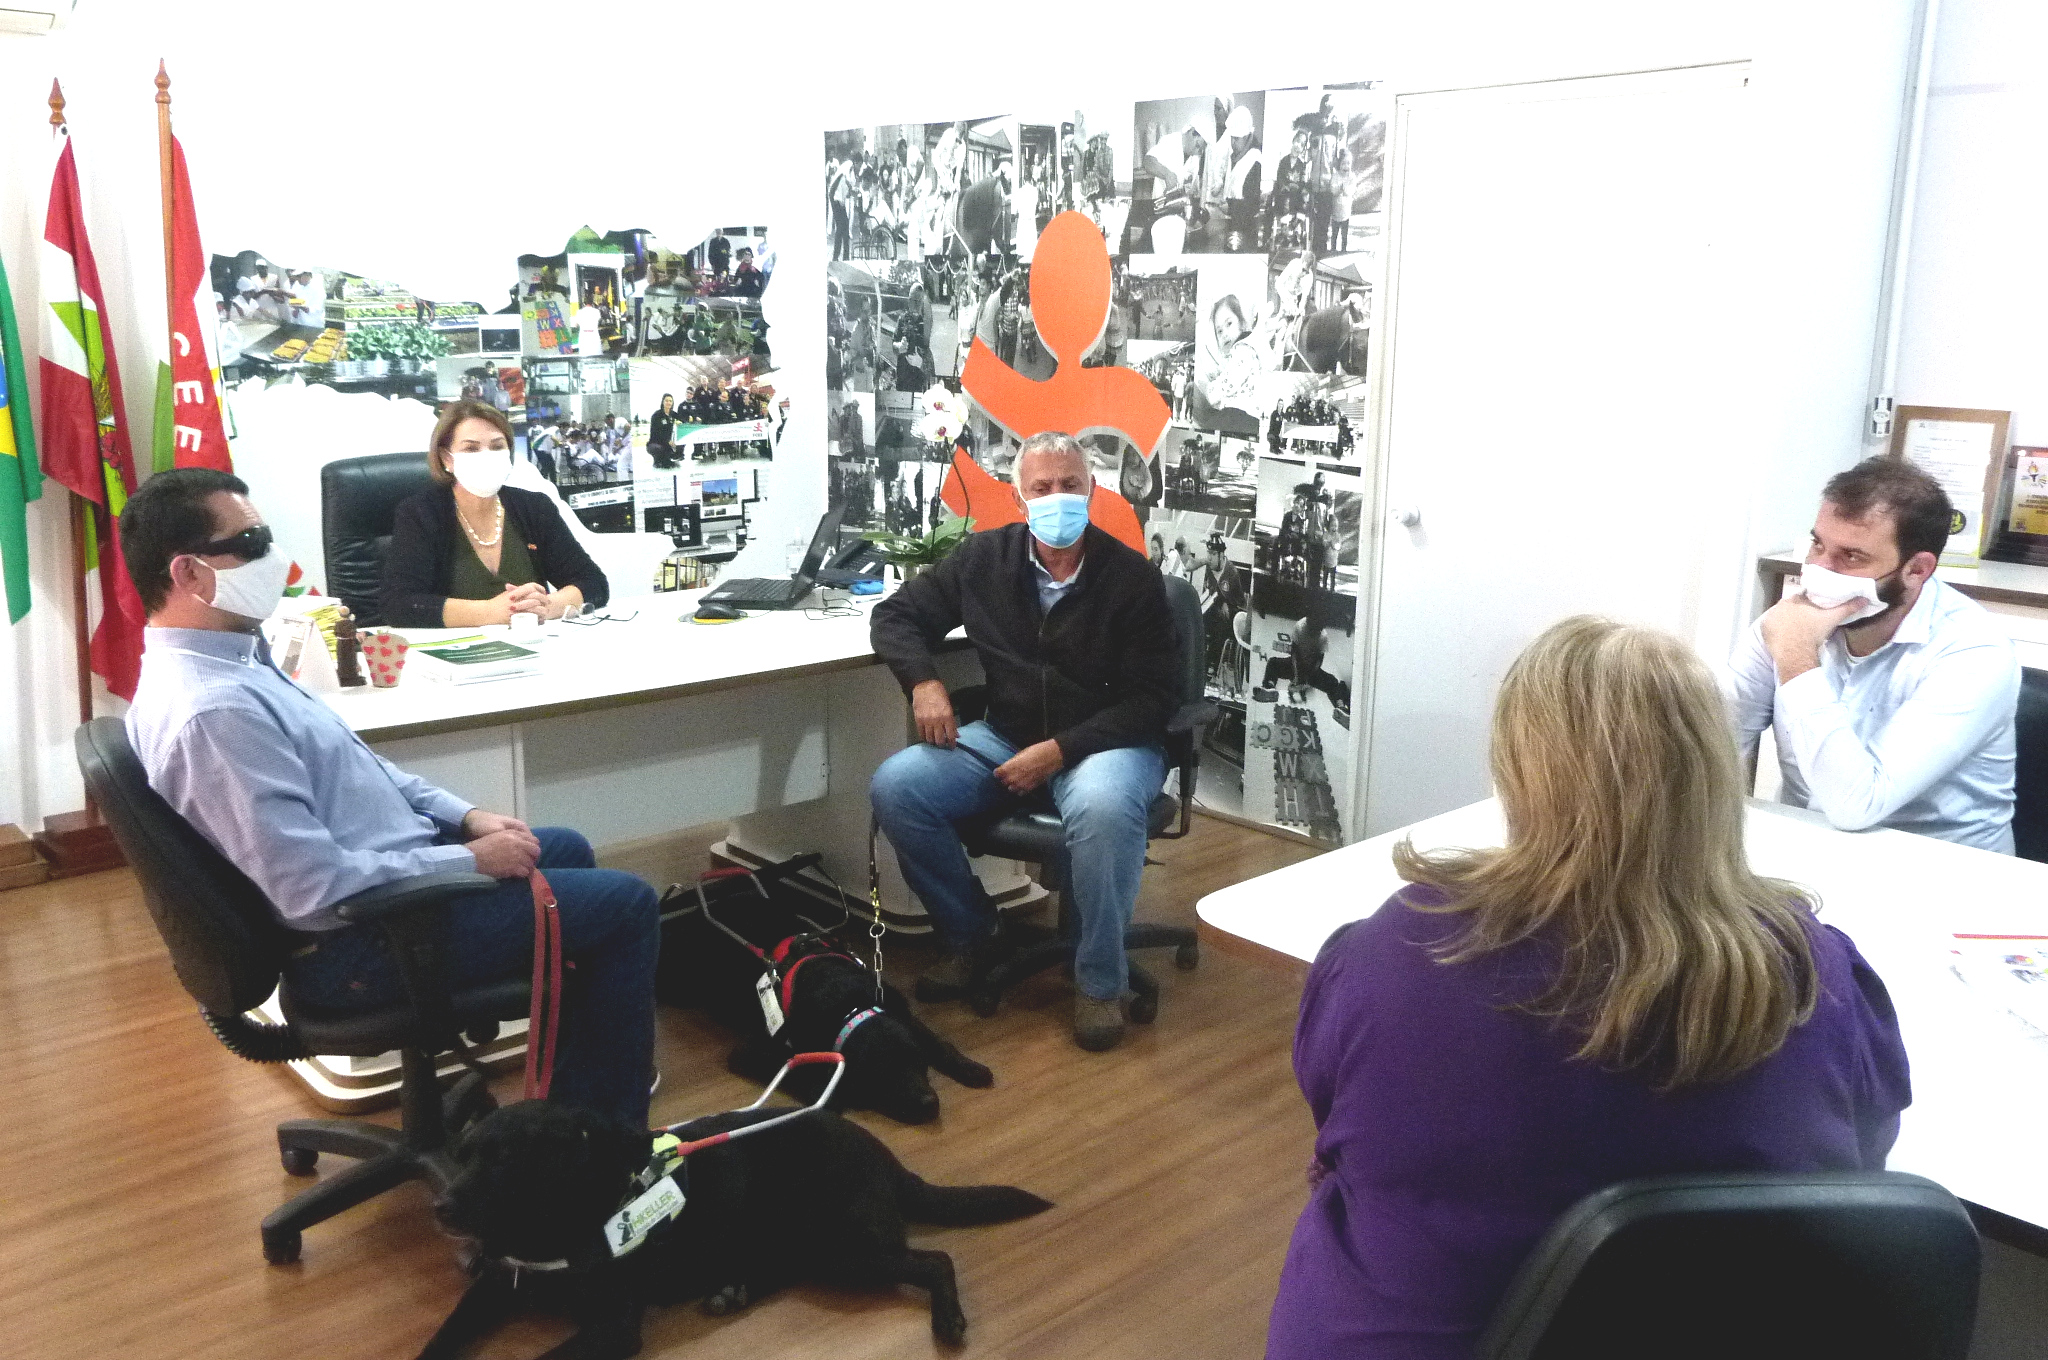 Cinco pessoas sentadas, sala de reunião, dois cães pretos deitados no chão. 